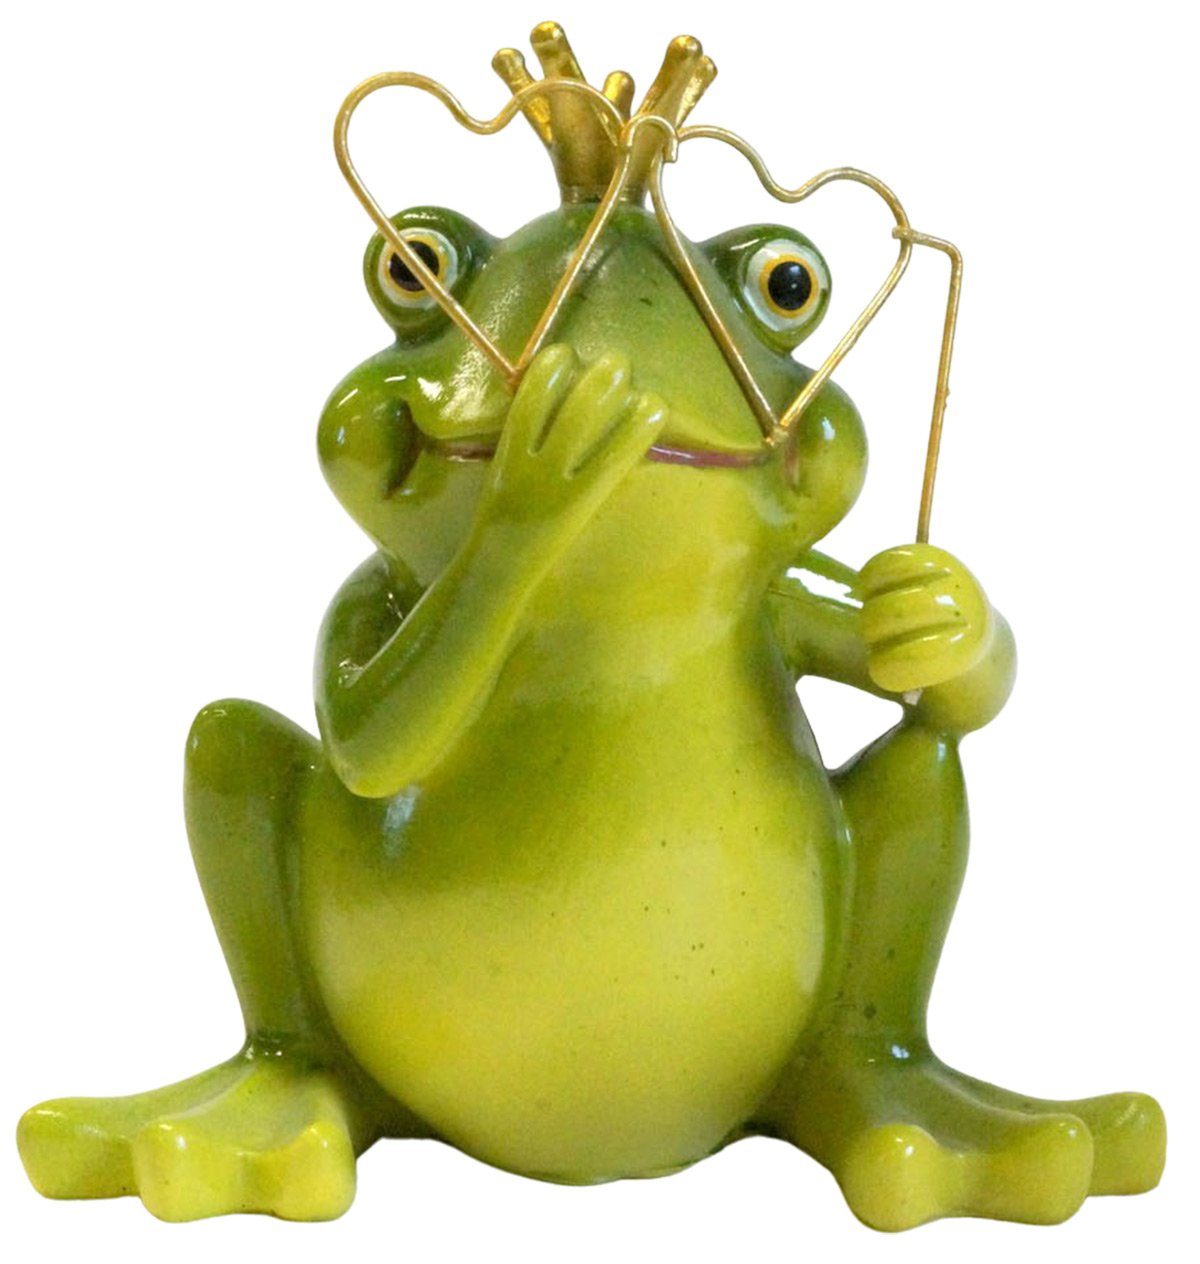 Frosch Brille Gartenursel Dekofigur 2er oder Kussmund Set mit